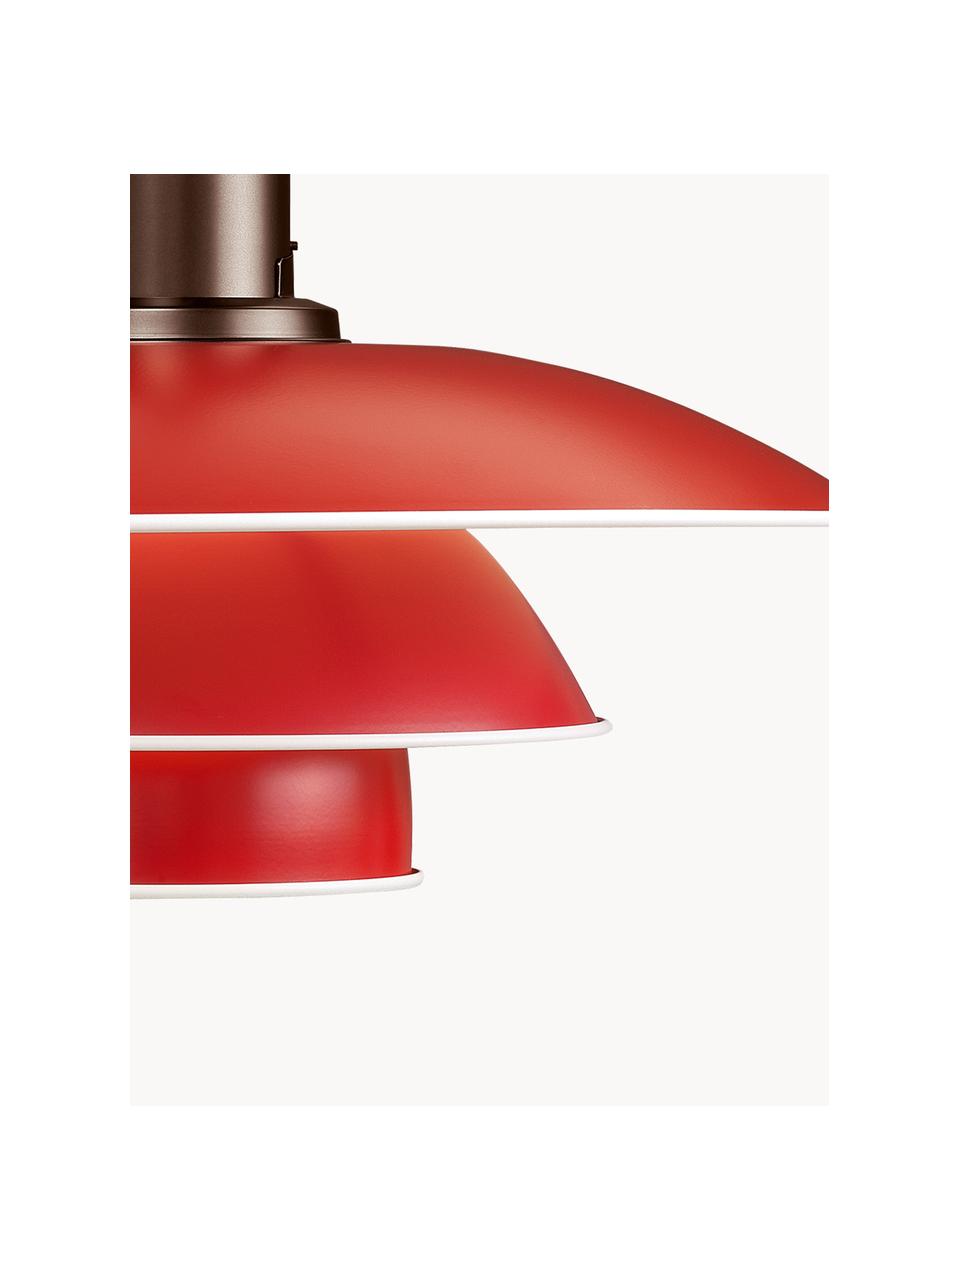 Hanglamp PH 3½-3, Lampenkap: gecoat aluminium, Rood, koper, Ø 33 x H 31 cm